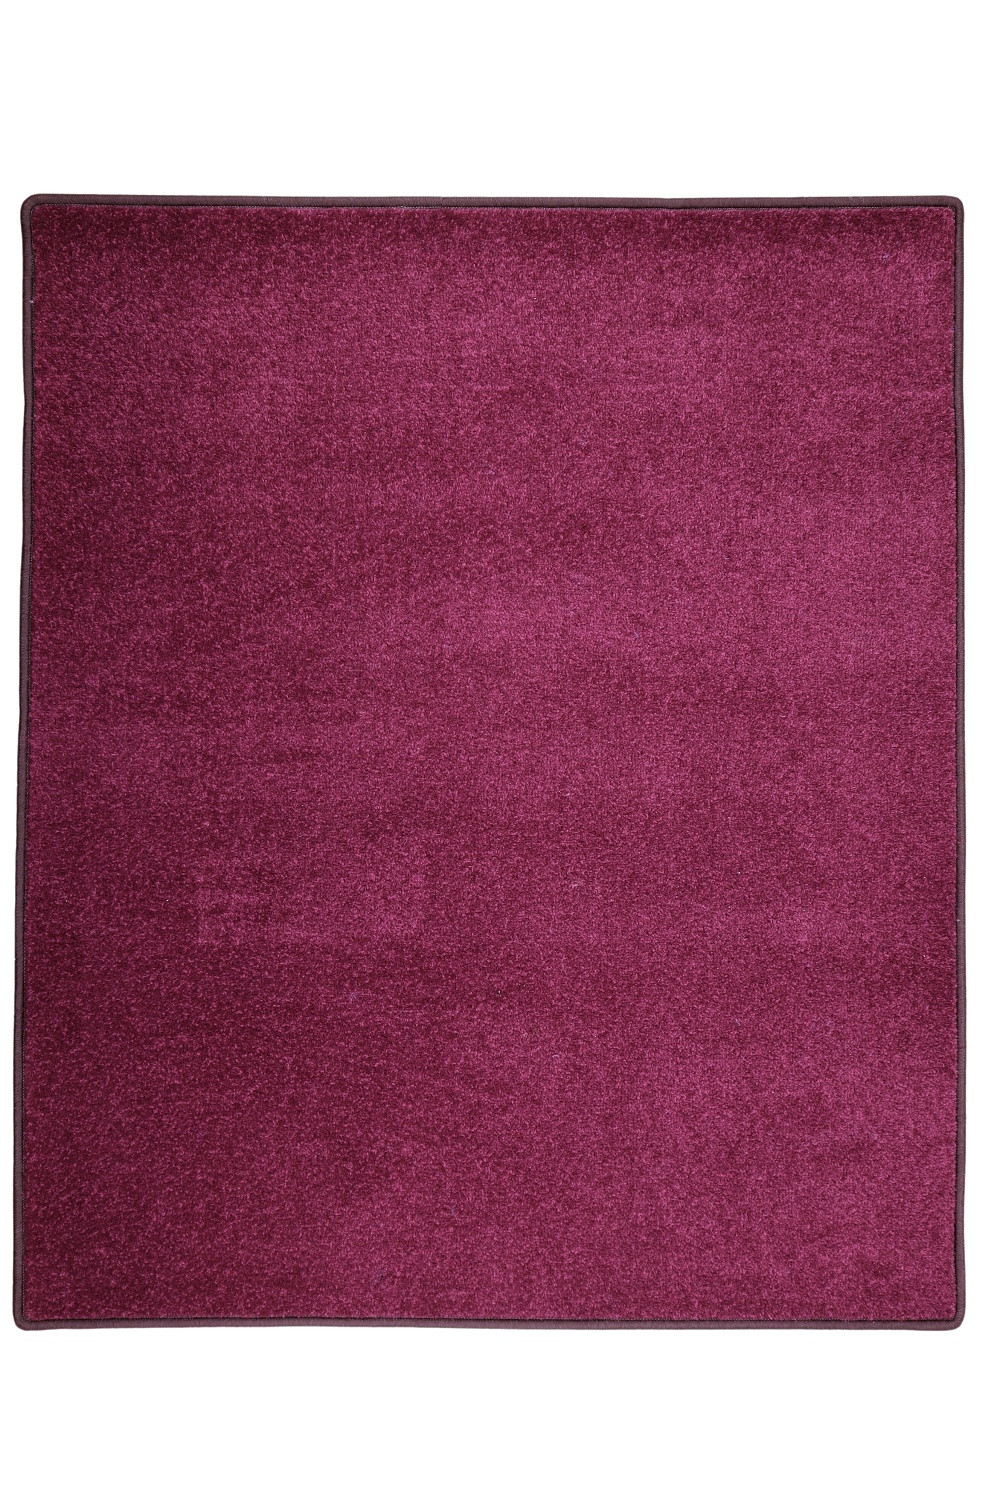 Kusový koberec Eton fialový 48 - 50x80 cm Vopi koberce 